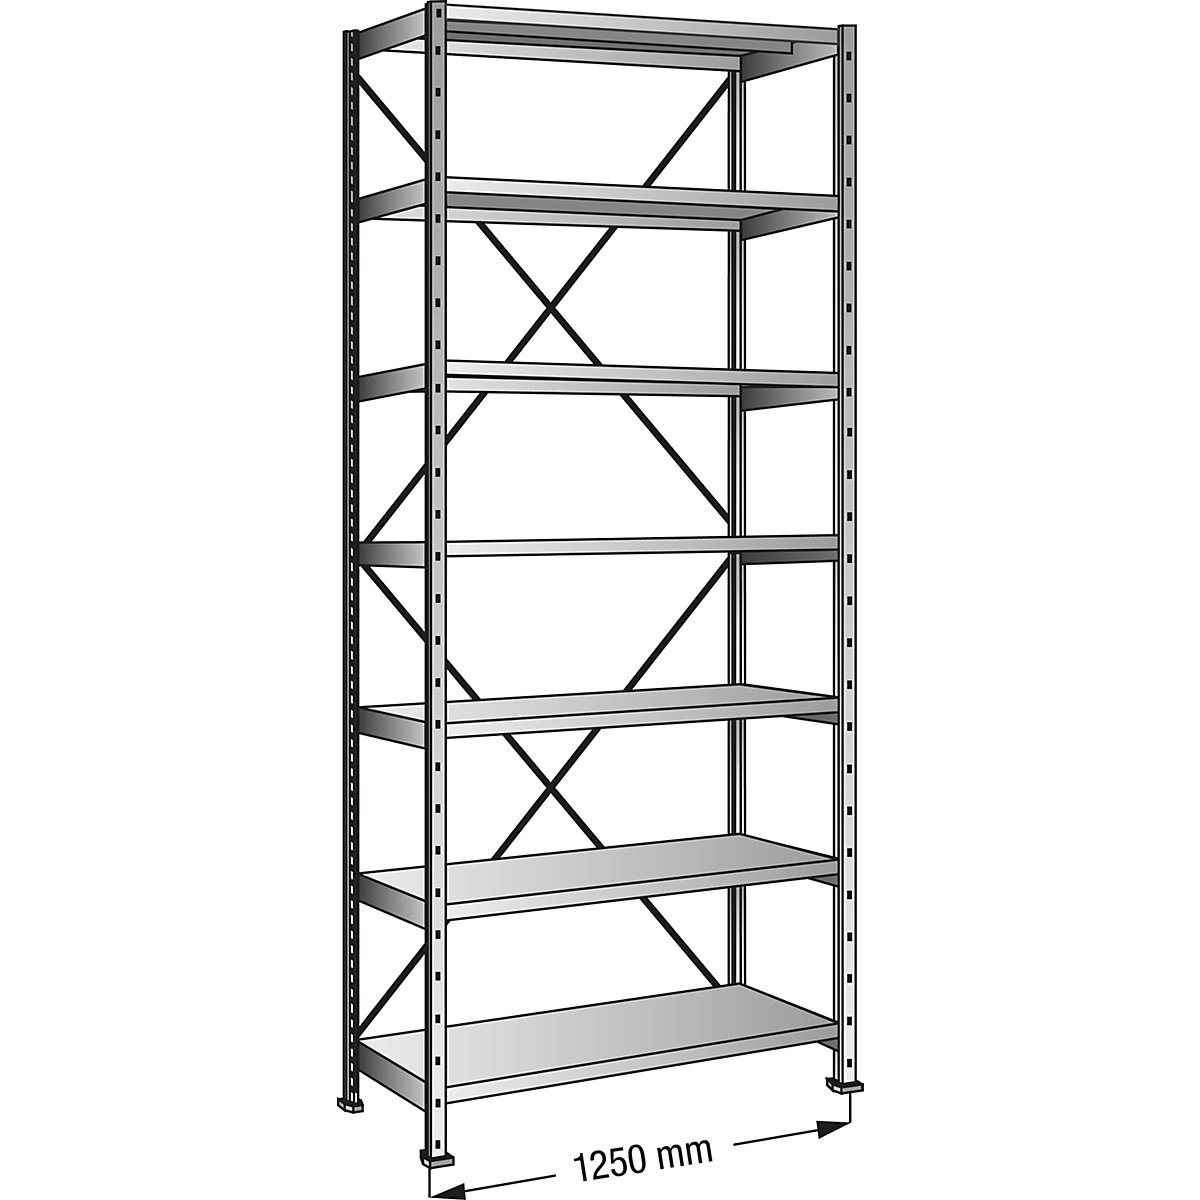 Boltless shelving unit, zinc plated, 7 shelves, height 2640 mm, shelf width 1200 mm, depth 500 mm, standard shelf unit